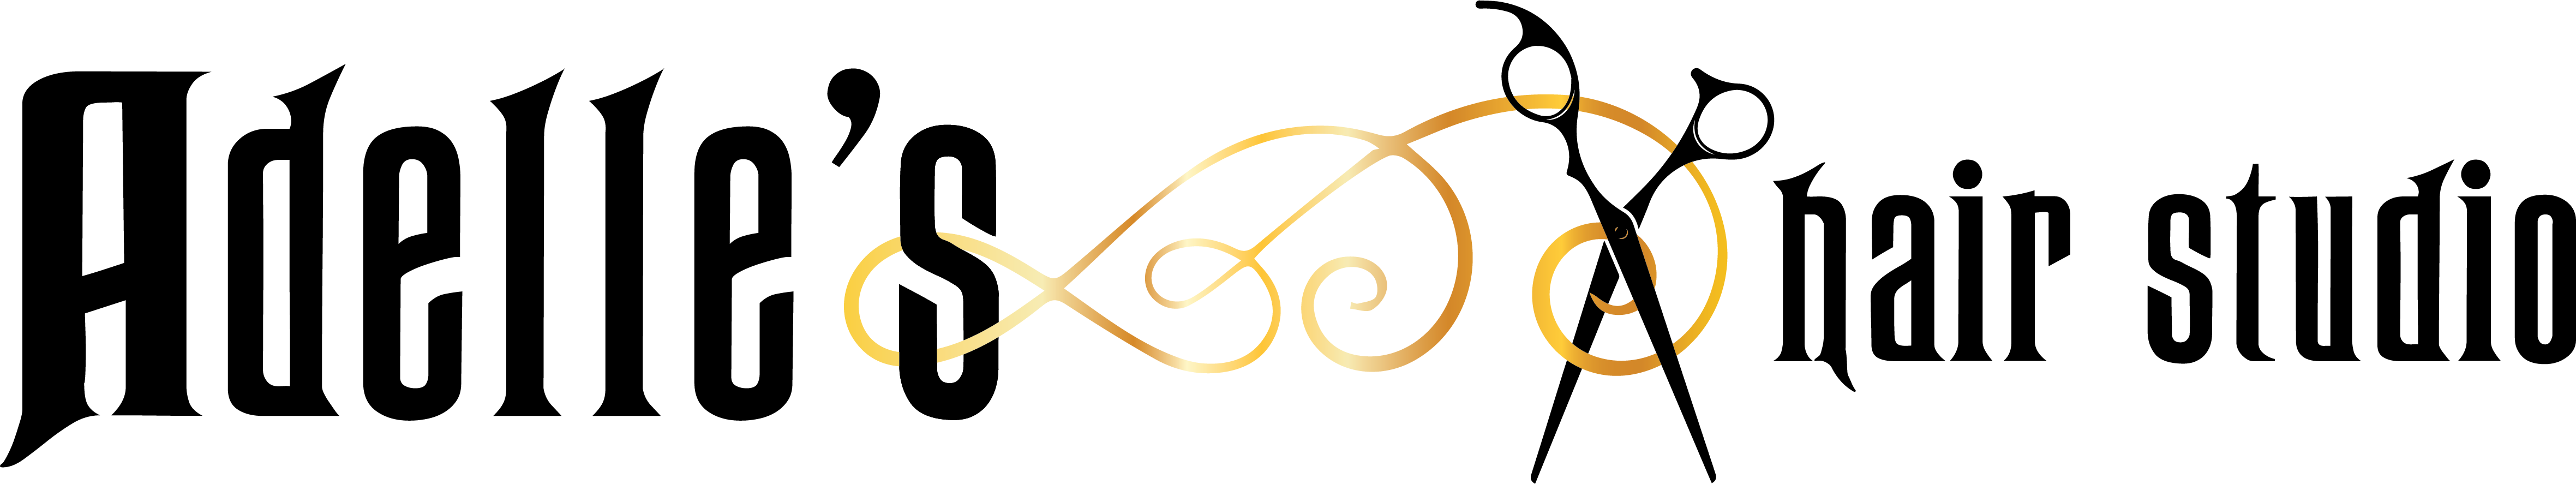 Adelle's Hair Studio logo image